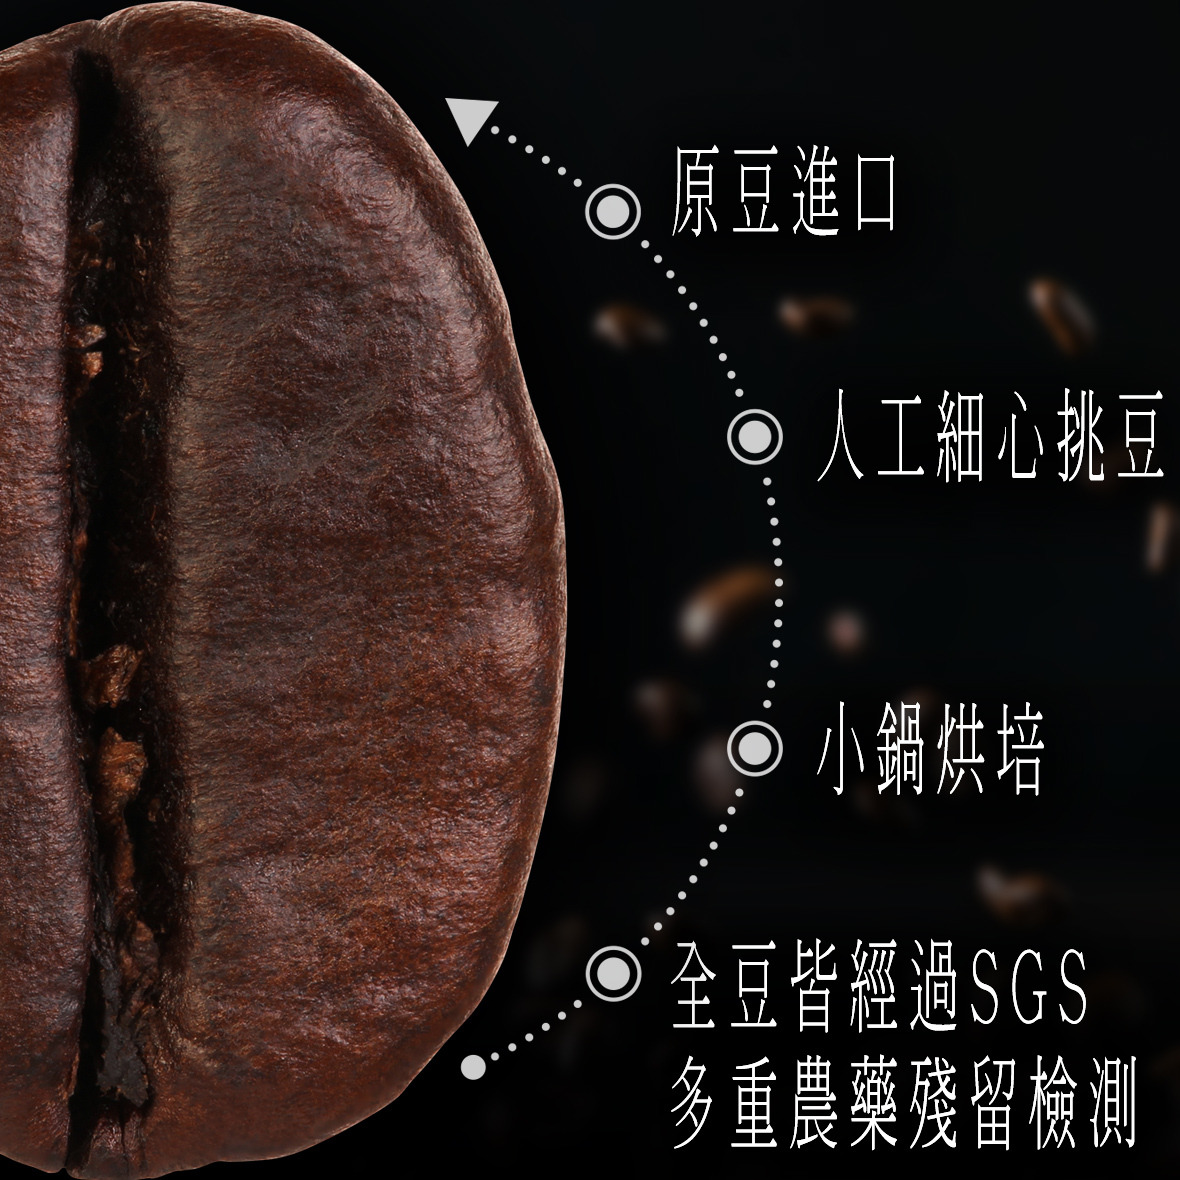 黑鑲金咖啡-印尼黃金曼特寧咖啡豆